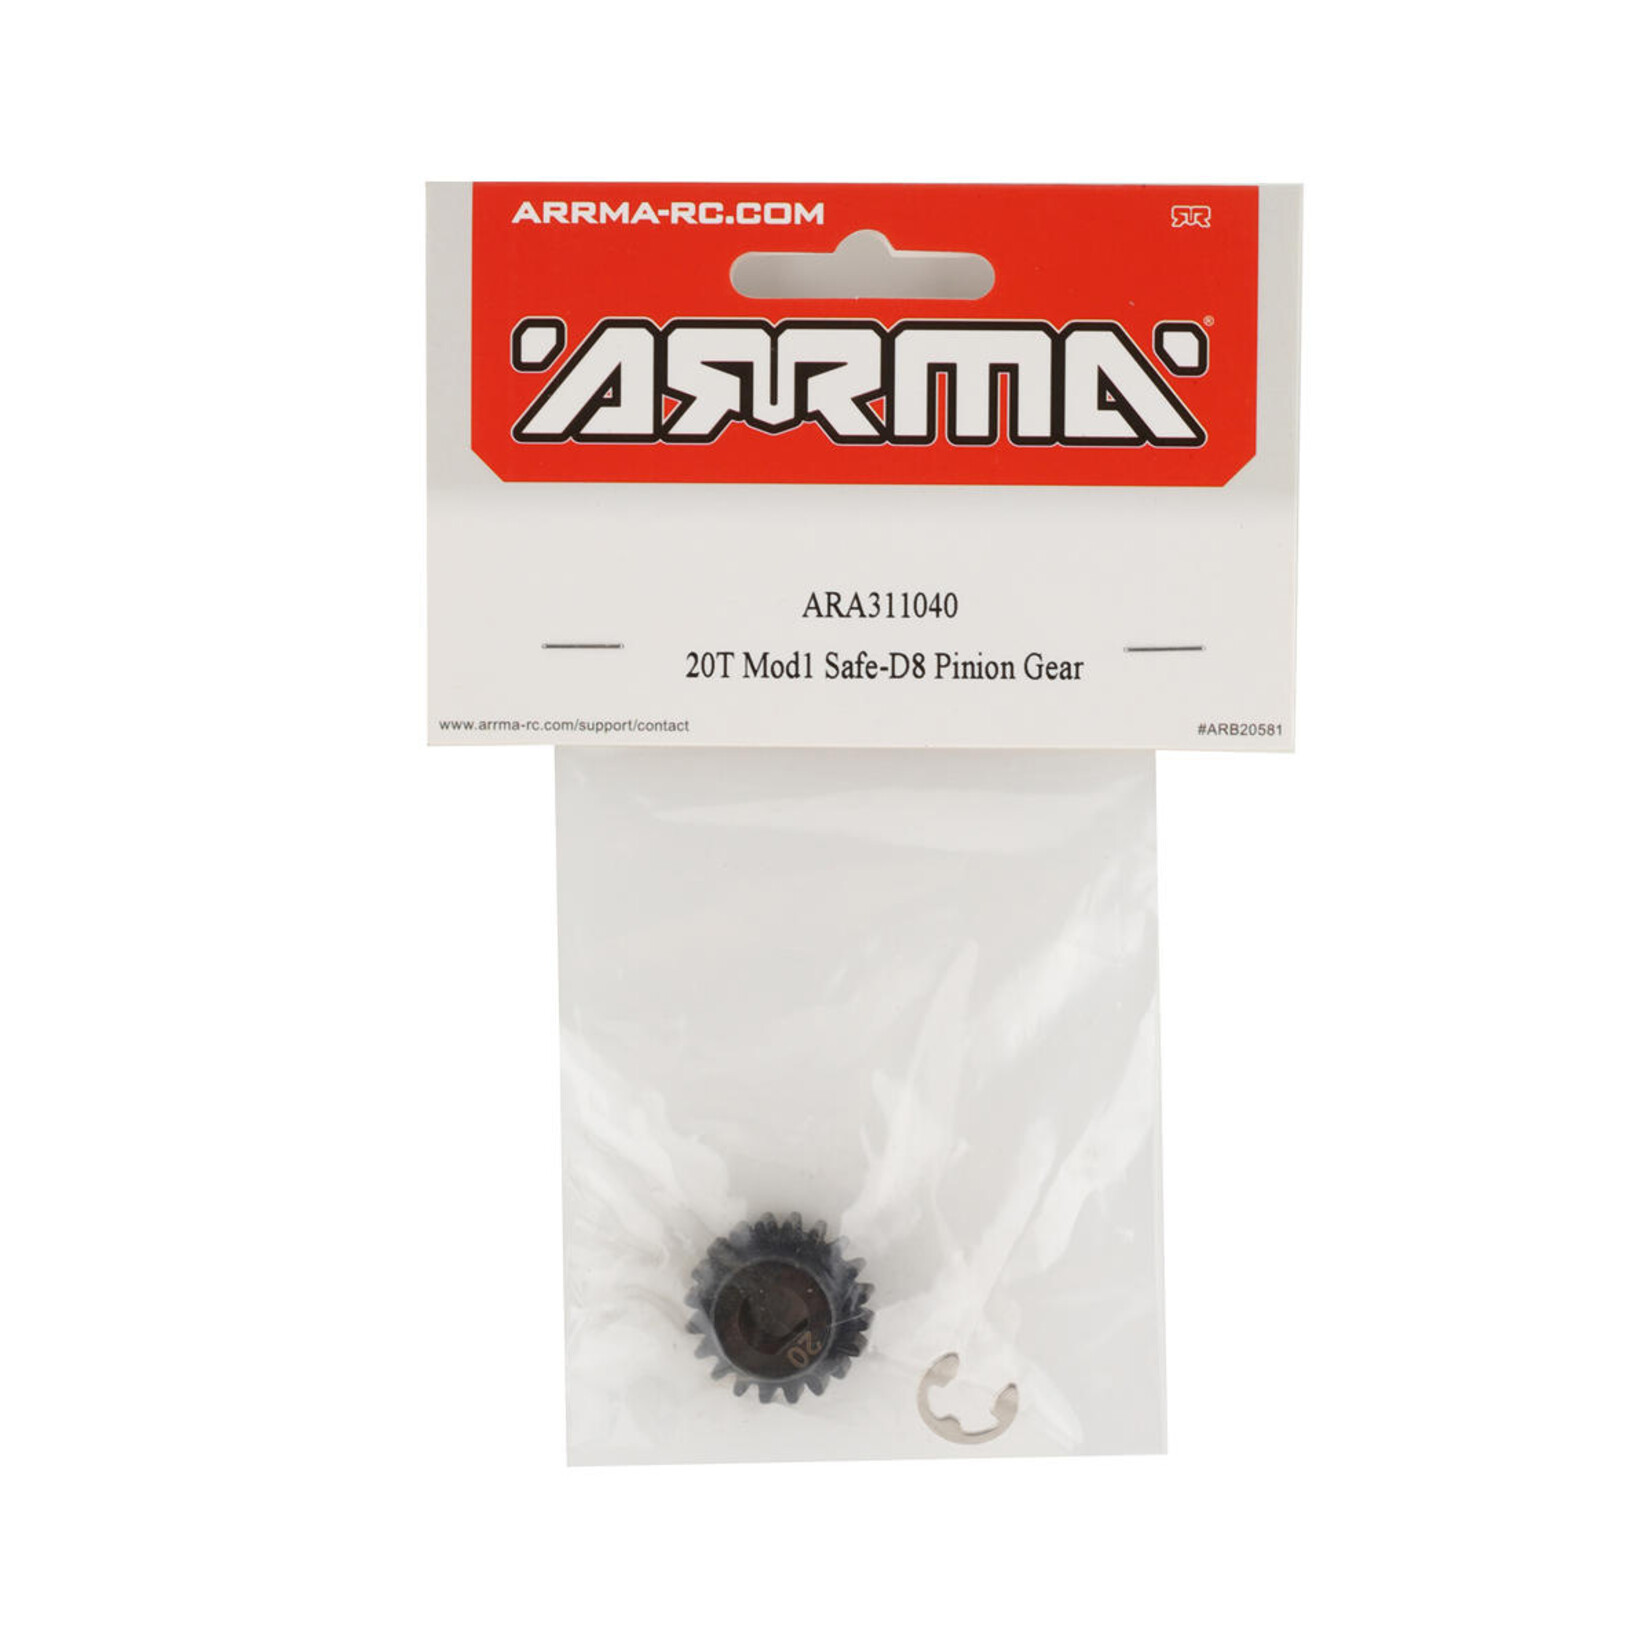 ARRMA Arrma Safe-D8 Mod1 Pinion Gear (20T) #ARA311040